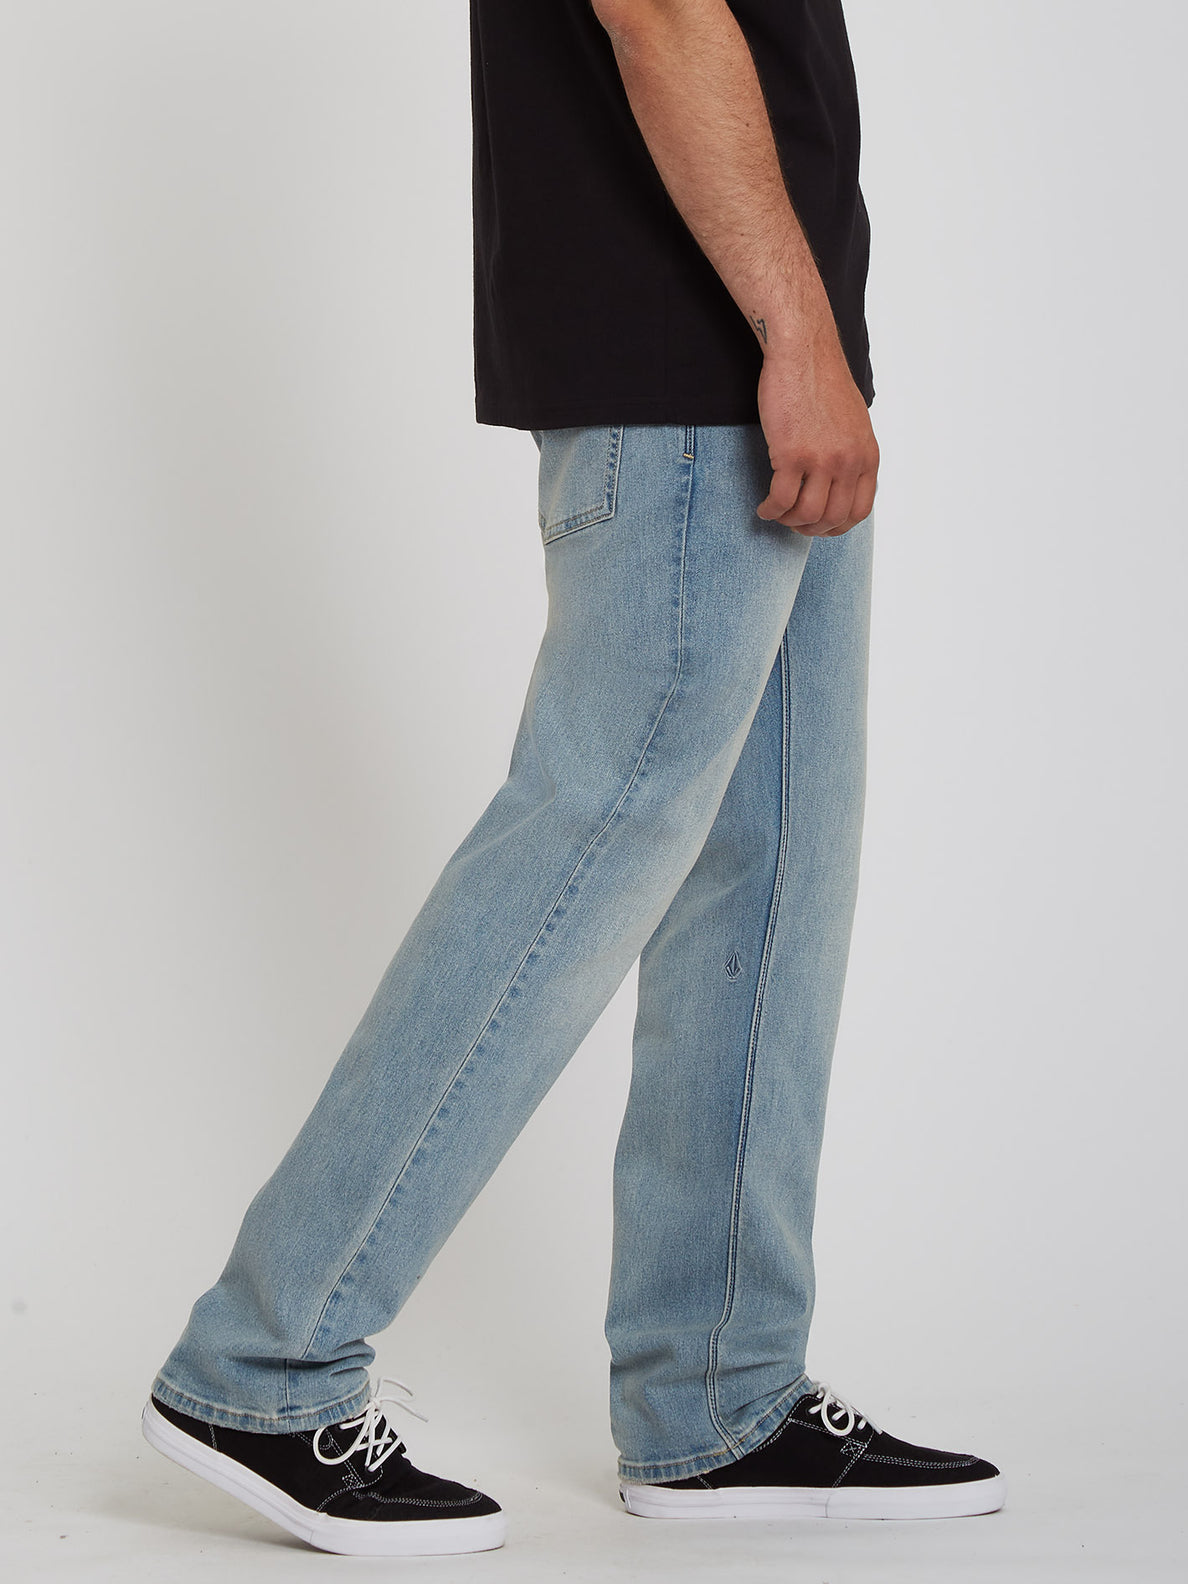 Volcom Solver Denim Jeans – Worker Indigo Vintage